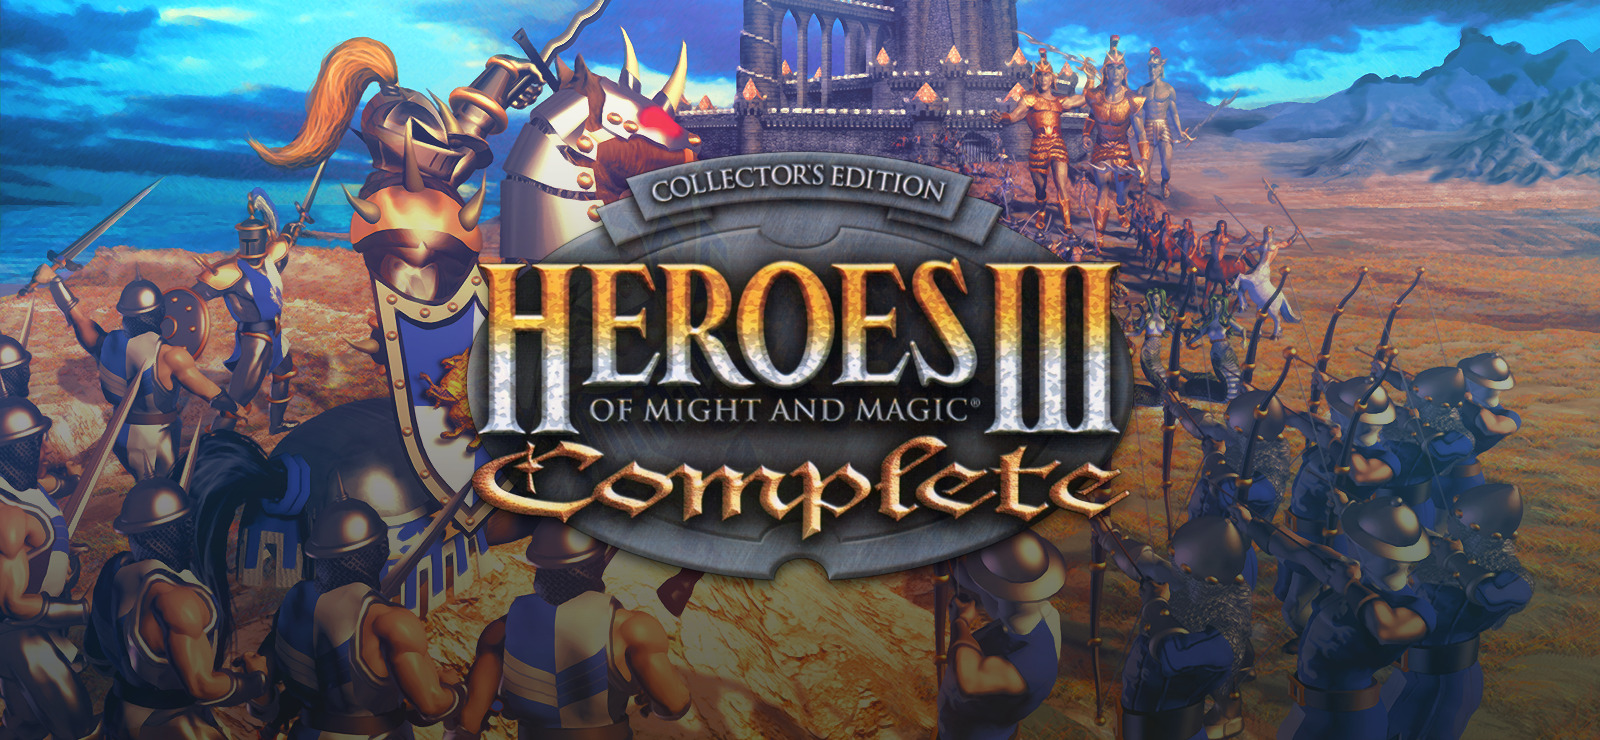 free download heroes iii online